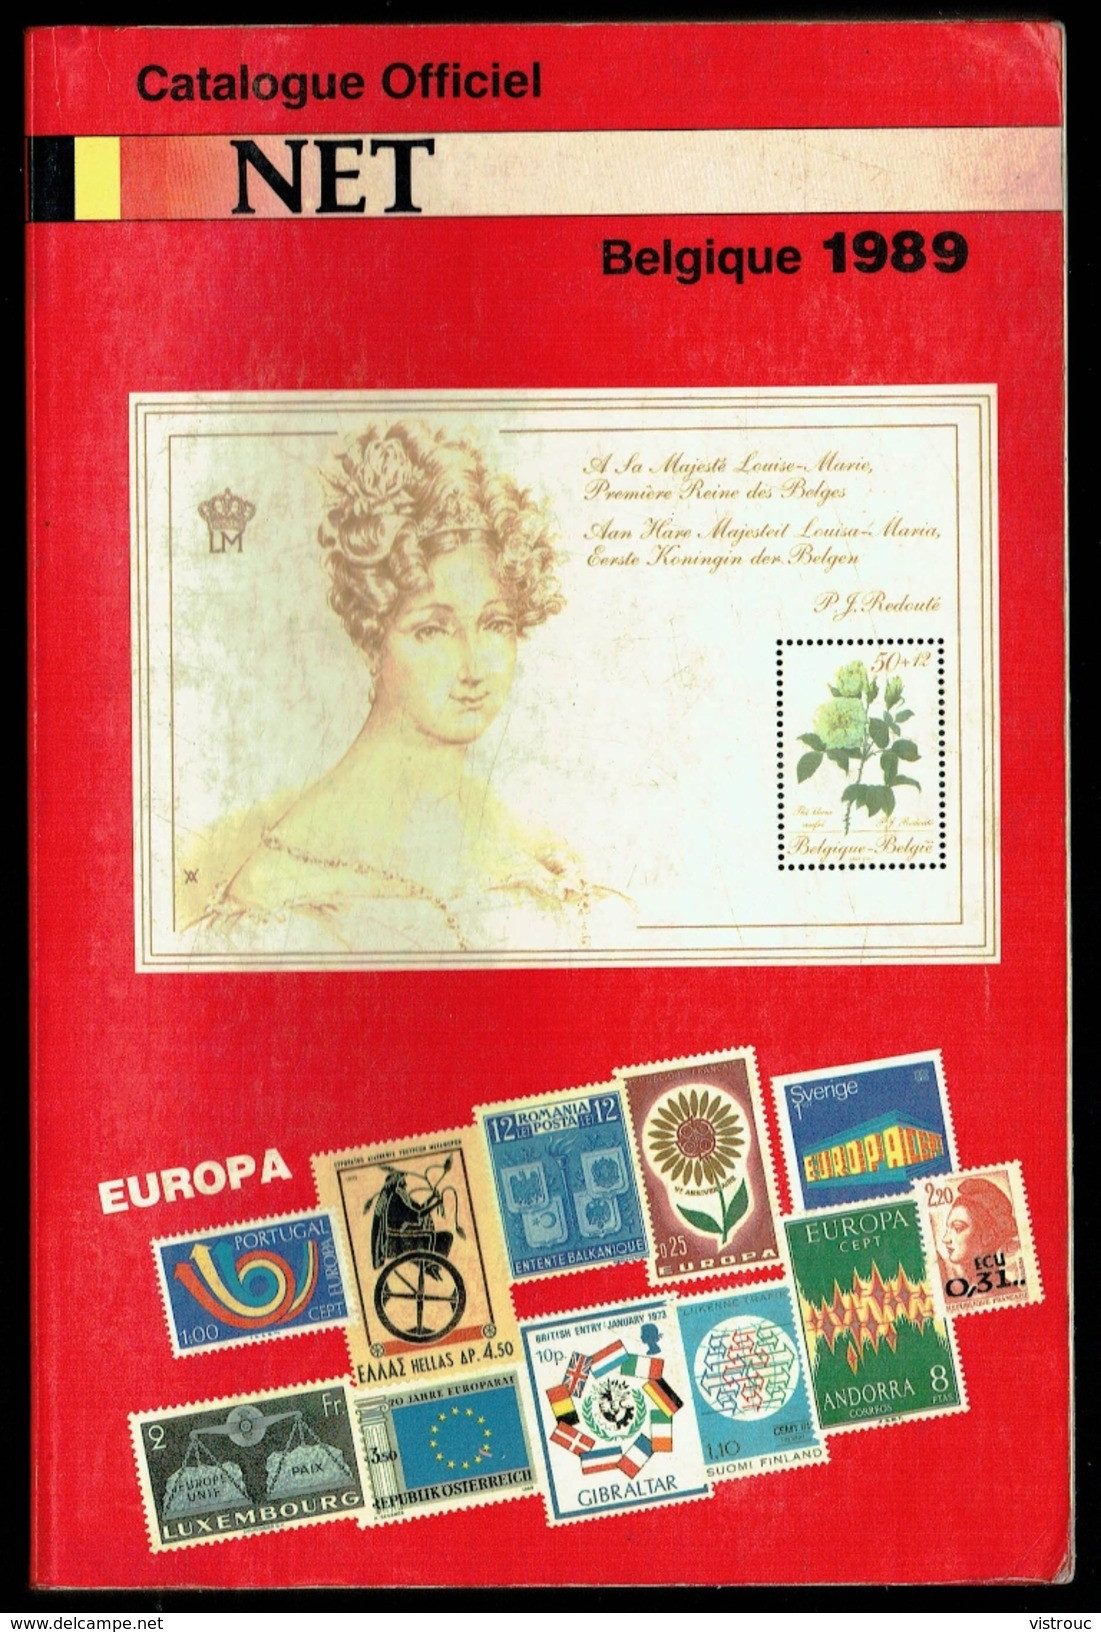 Catalogue Officiel NET (FR) 1989 - Timbres De Belgique. - Belgique